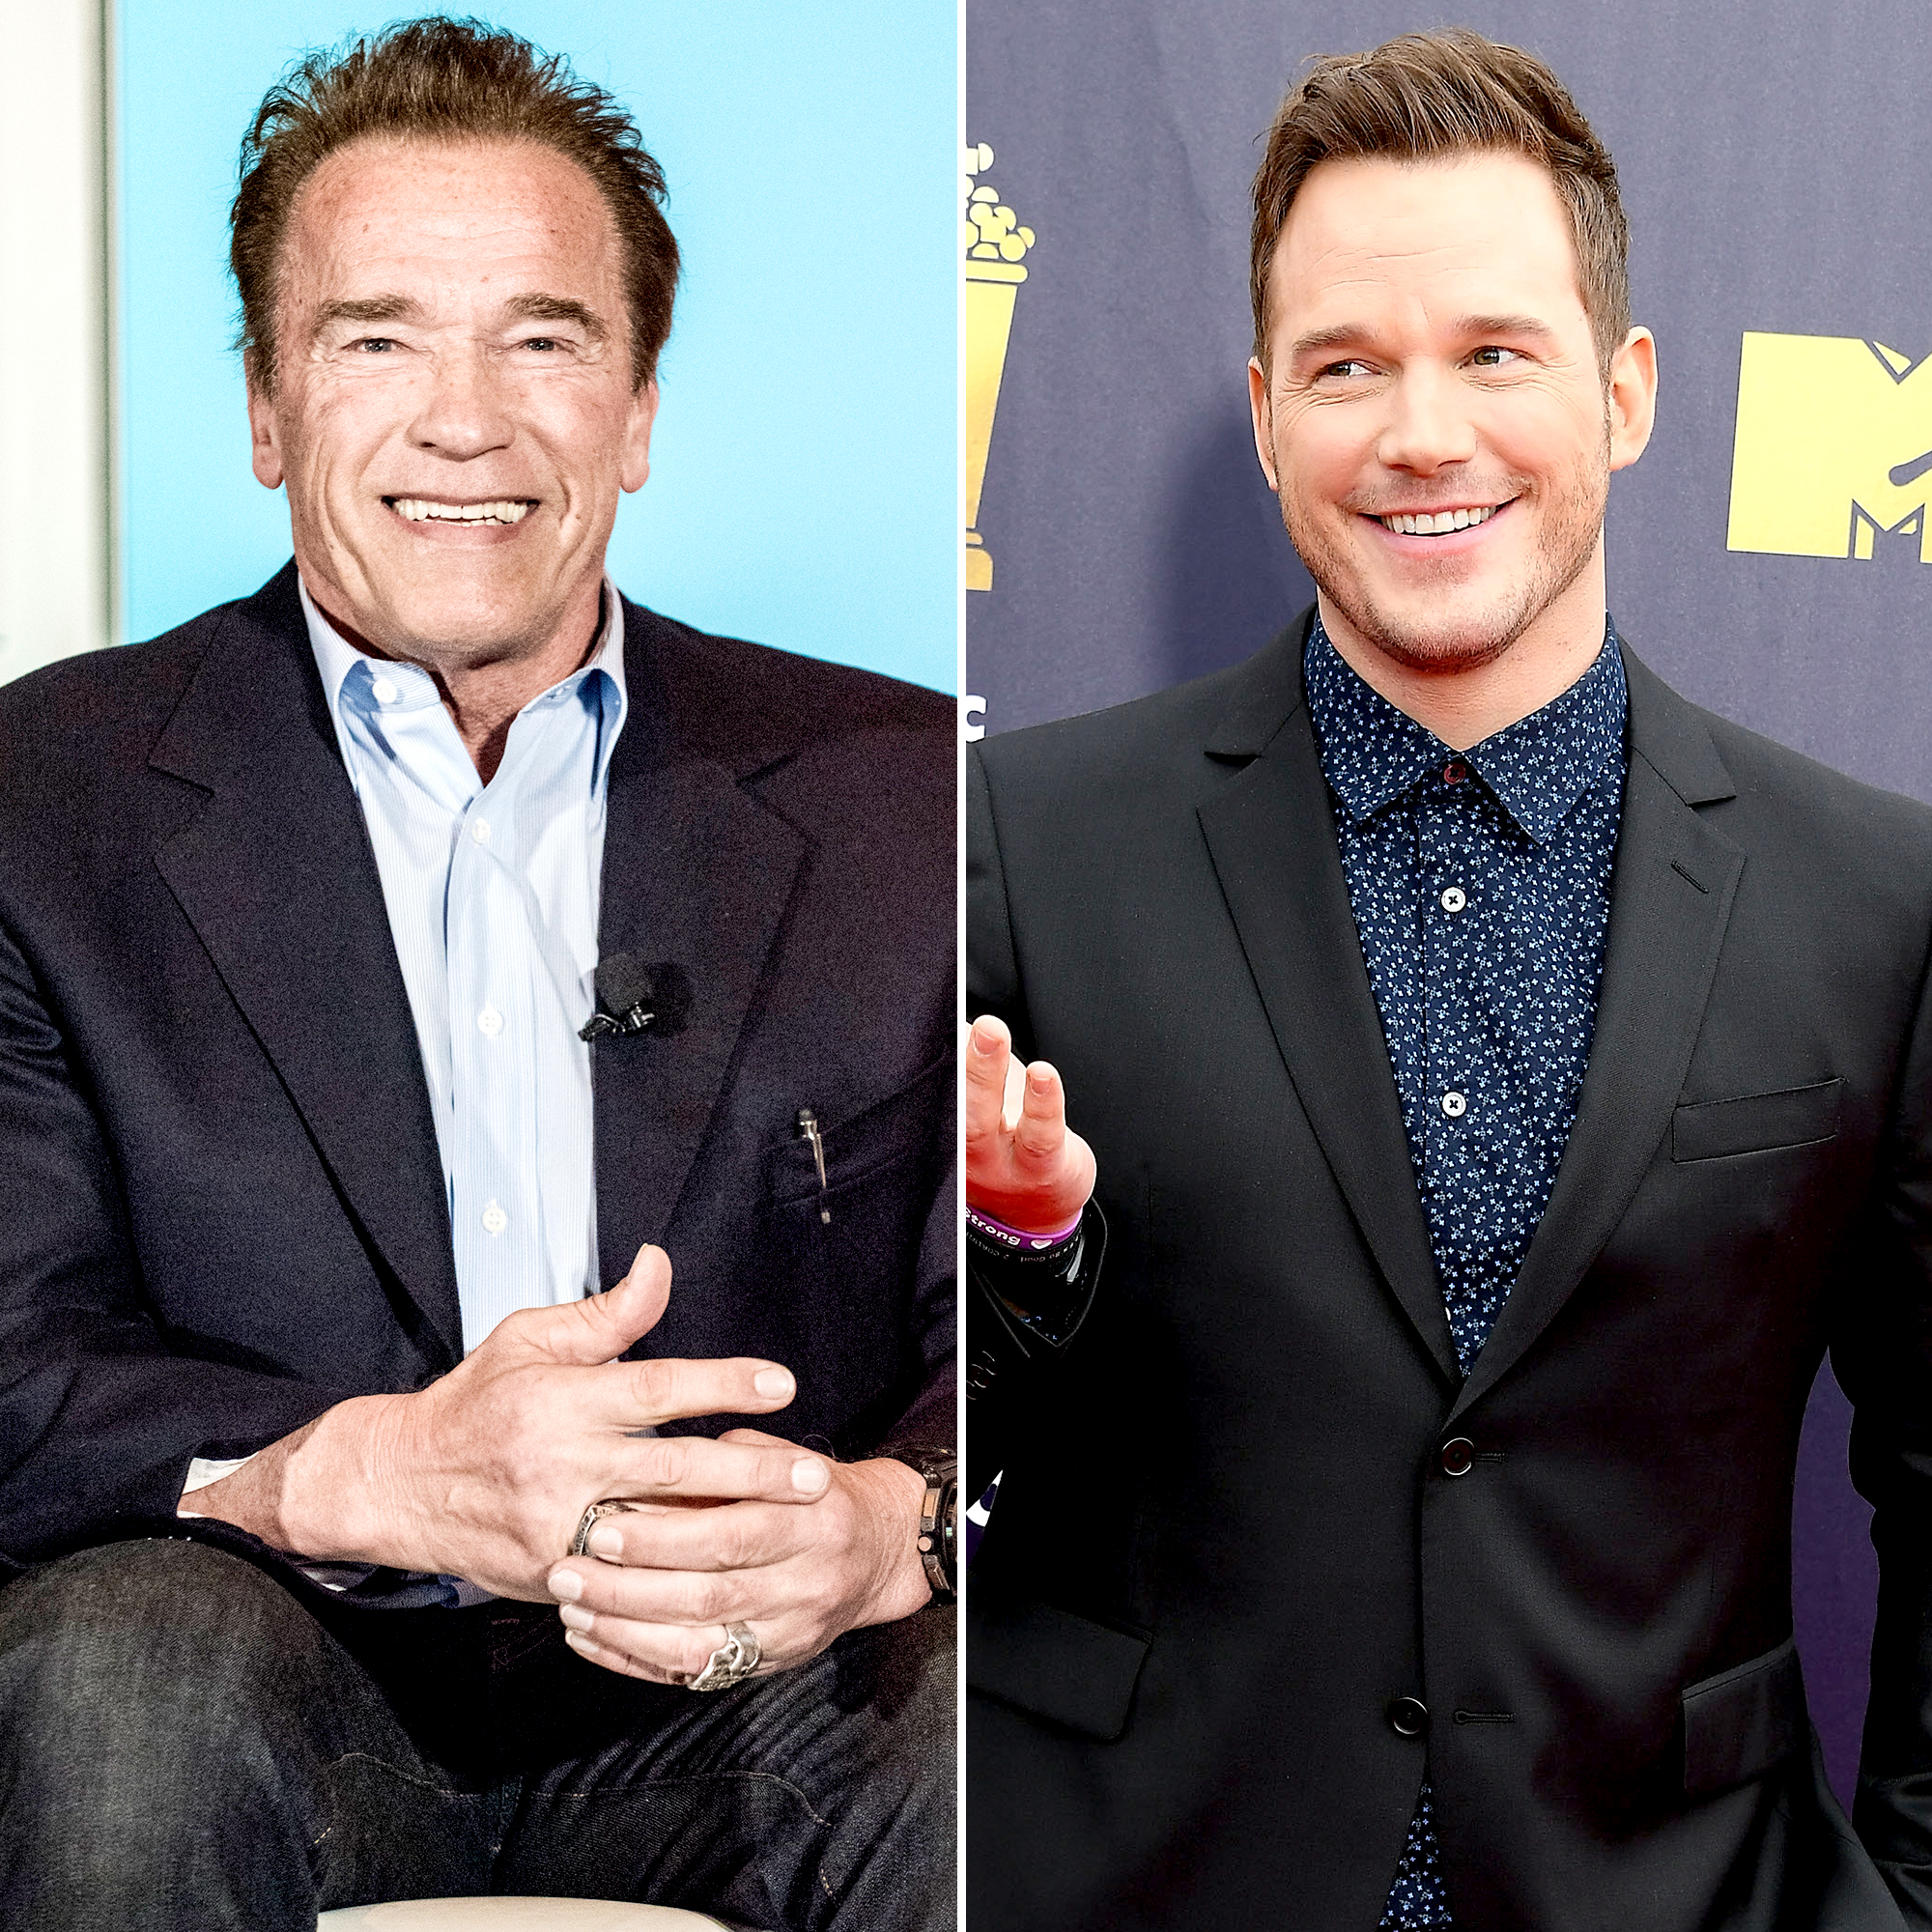 Arnold Schwarzenegger Fangirled Over Chris Pratt Before Engagement